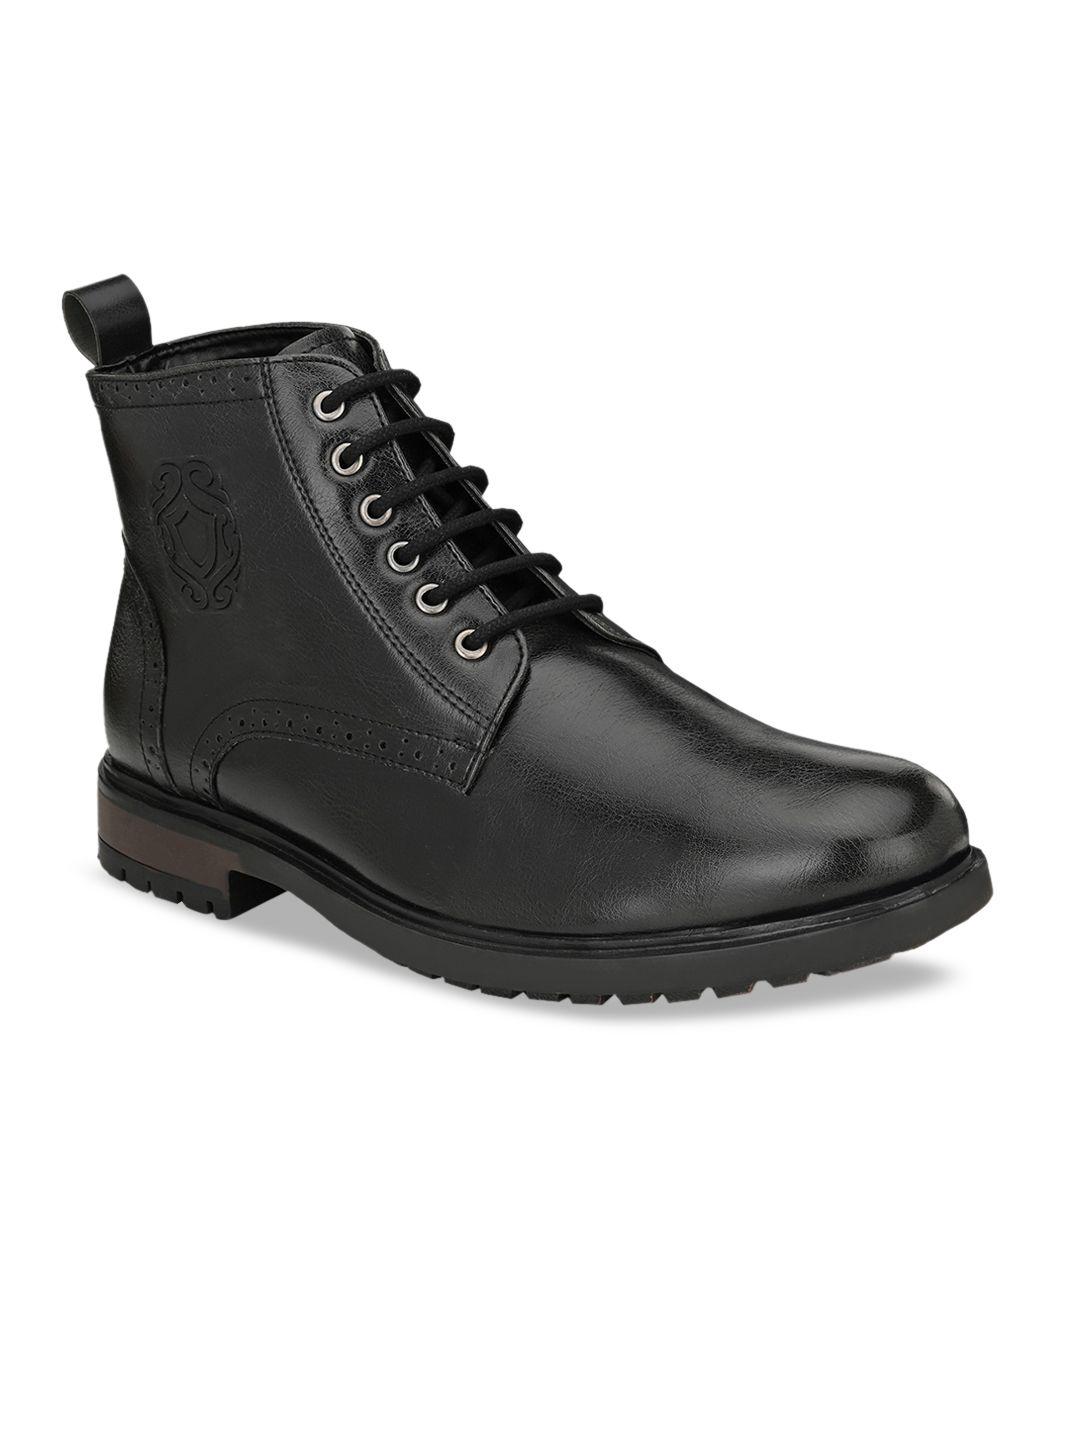 san frissco men black solid leather boots